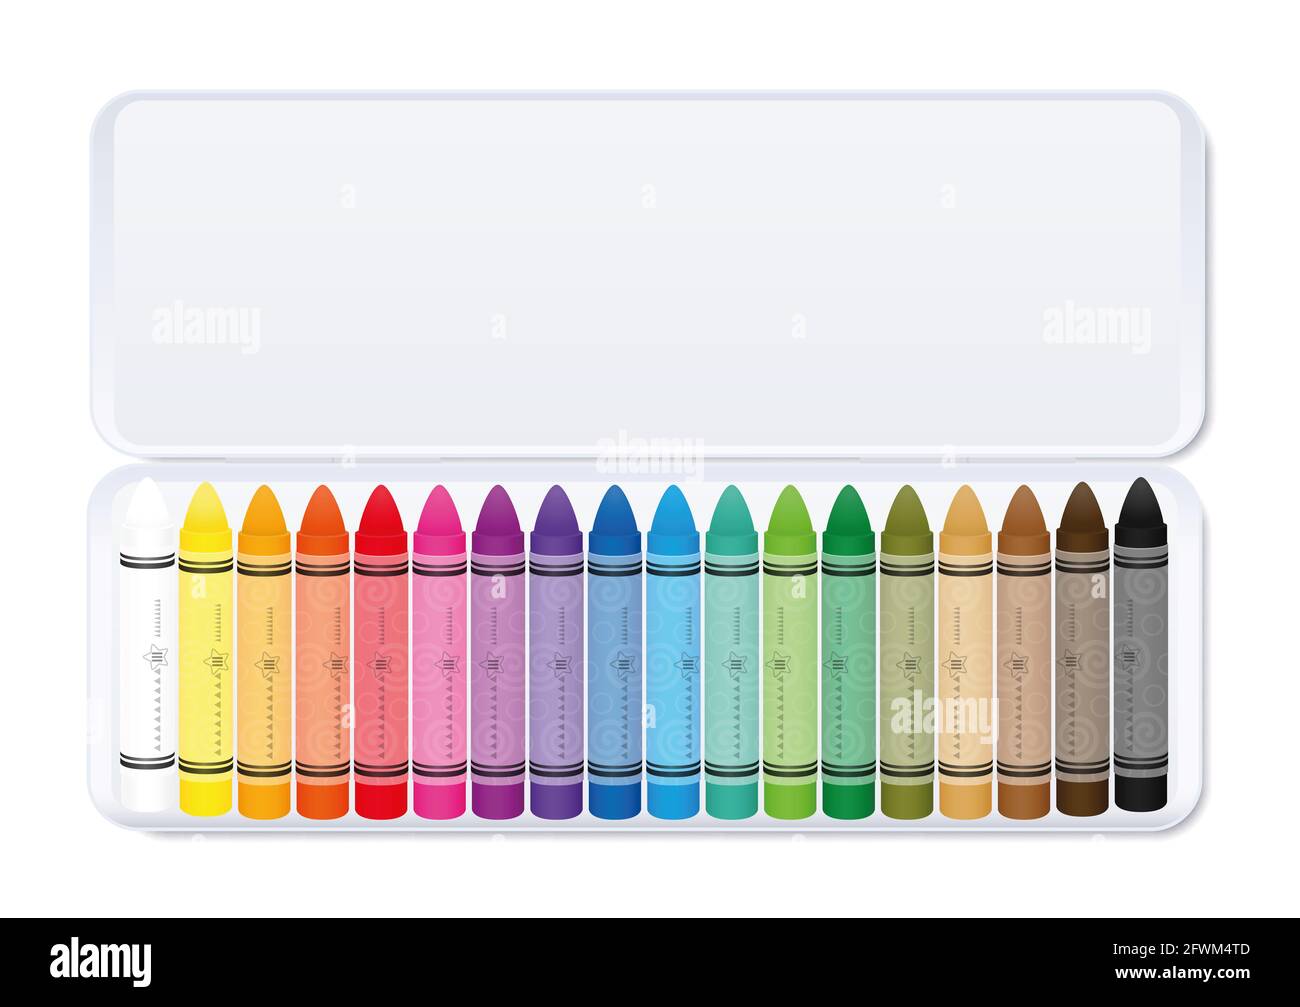 Wachsmalstifte in Pastellfarben, farbenfroh in einer weißen Metallbox, sortiert nach Farben - Illustration auf weißem Hintergrund. Stockfoto